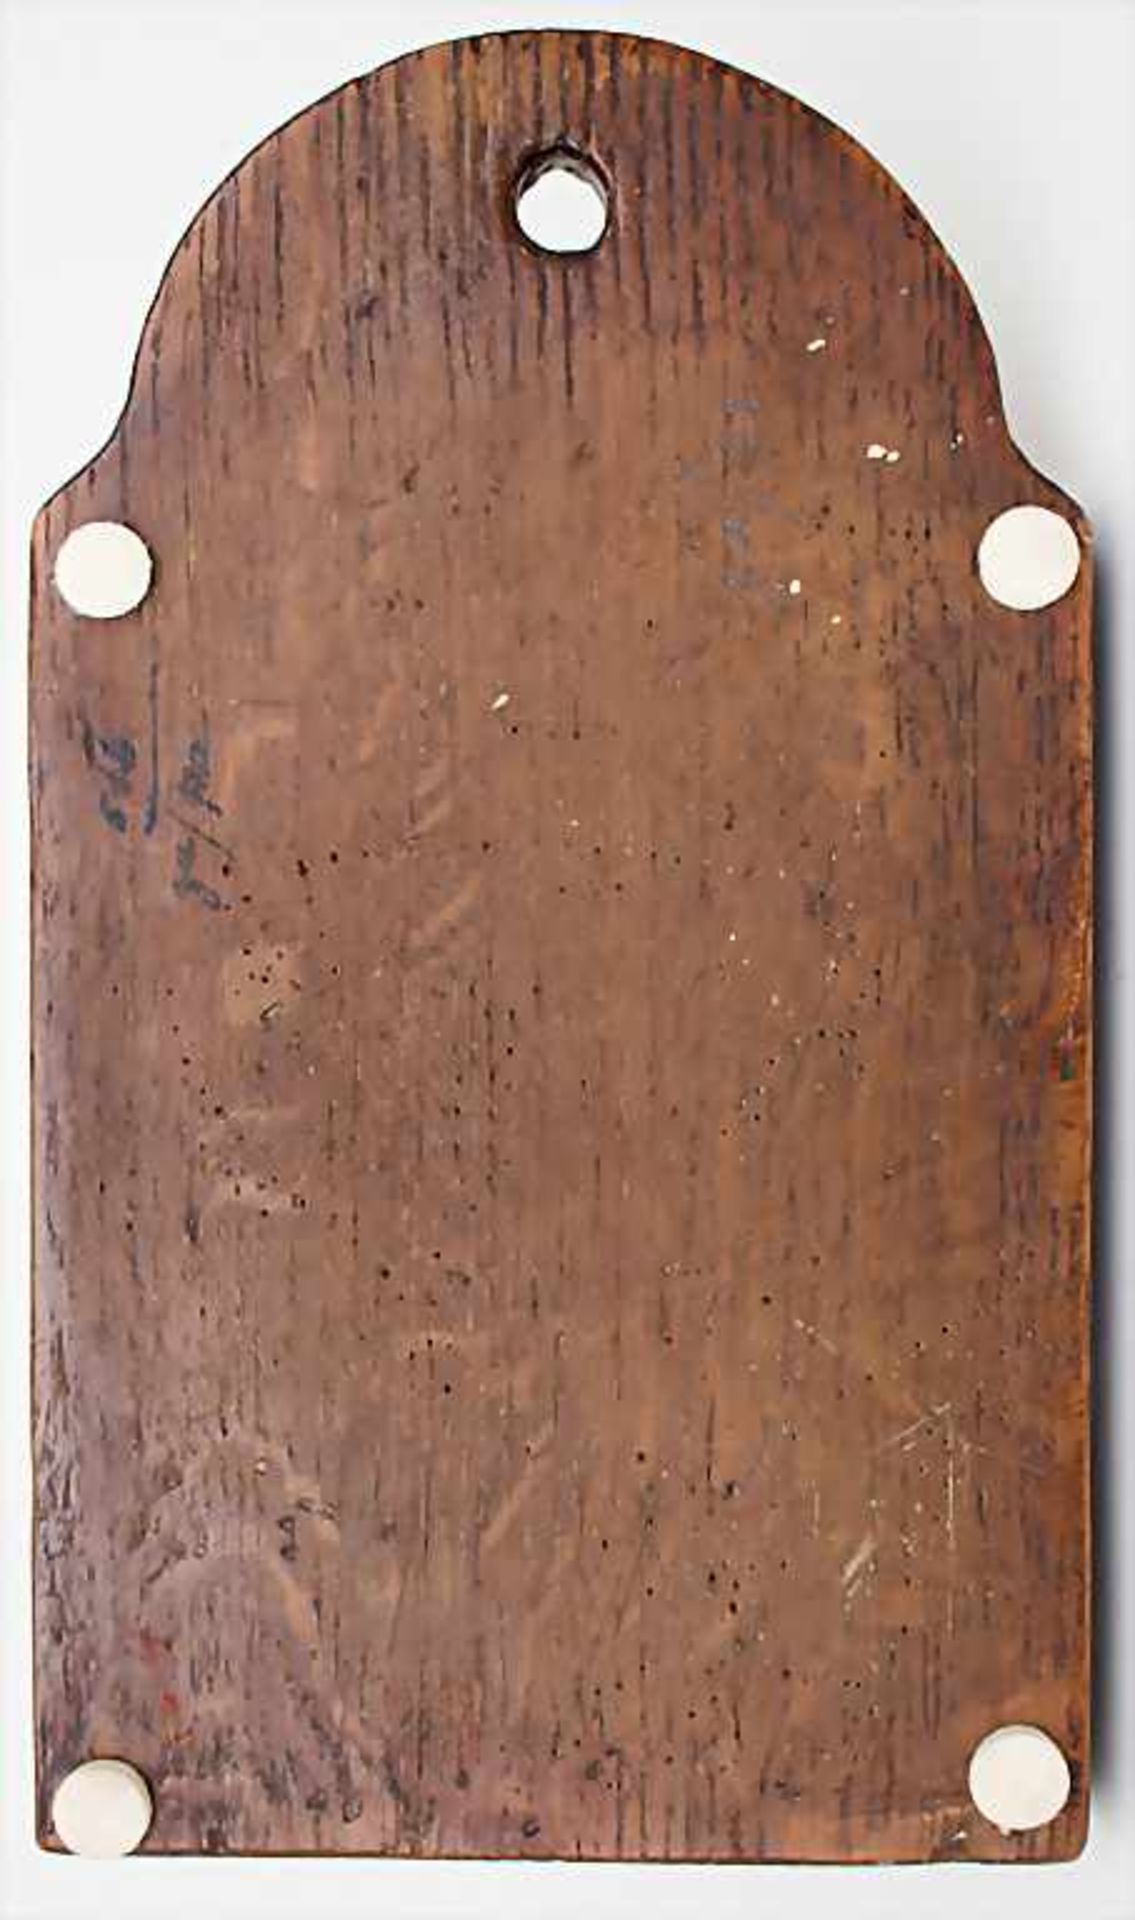 Wirtshausschild / A pub sign, 18./19. Jh.Material: Holz, Maße: H. 34cm, B. 20 cm, Zustand: gut- - - - Bild 3 aus 3